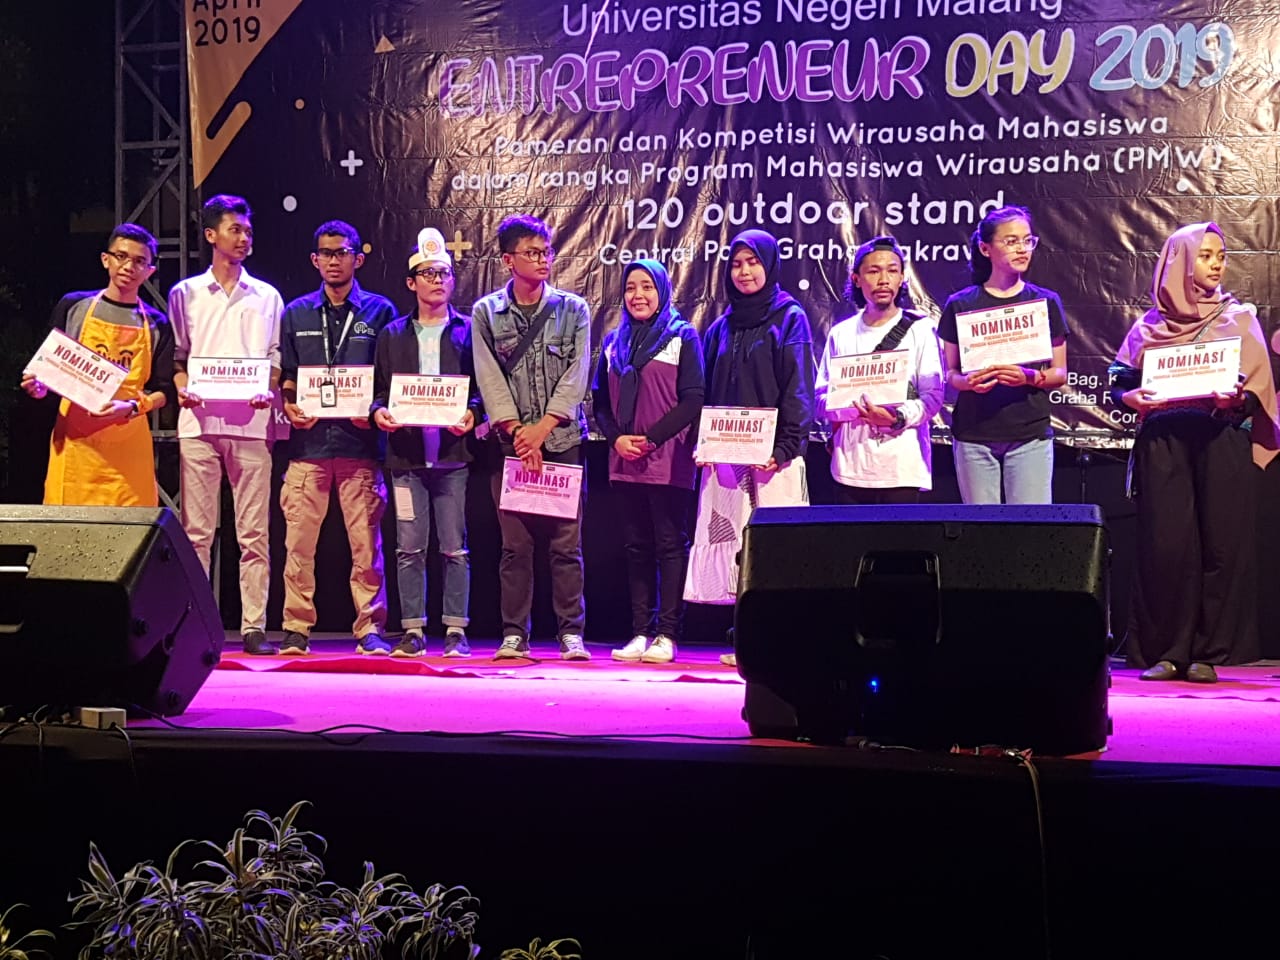 Selamat Kepada Tim Program Mahasiswa Wirausaha (PMW) Fakultas Teknik yang Didanai Universitas Negeri Malang pada Acara “Entrepreneur Day 2019” di Central Park Graha Cakrawala UM